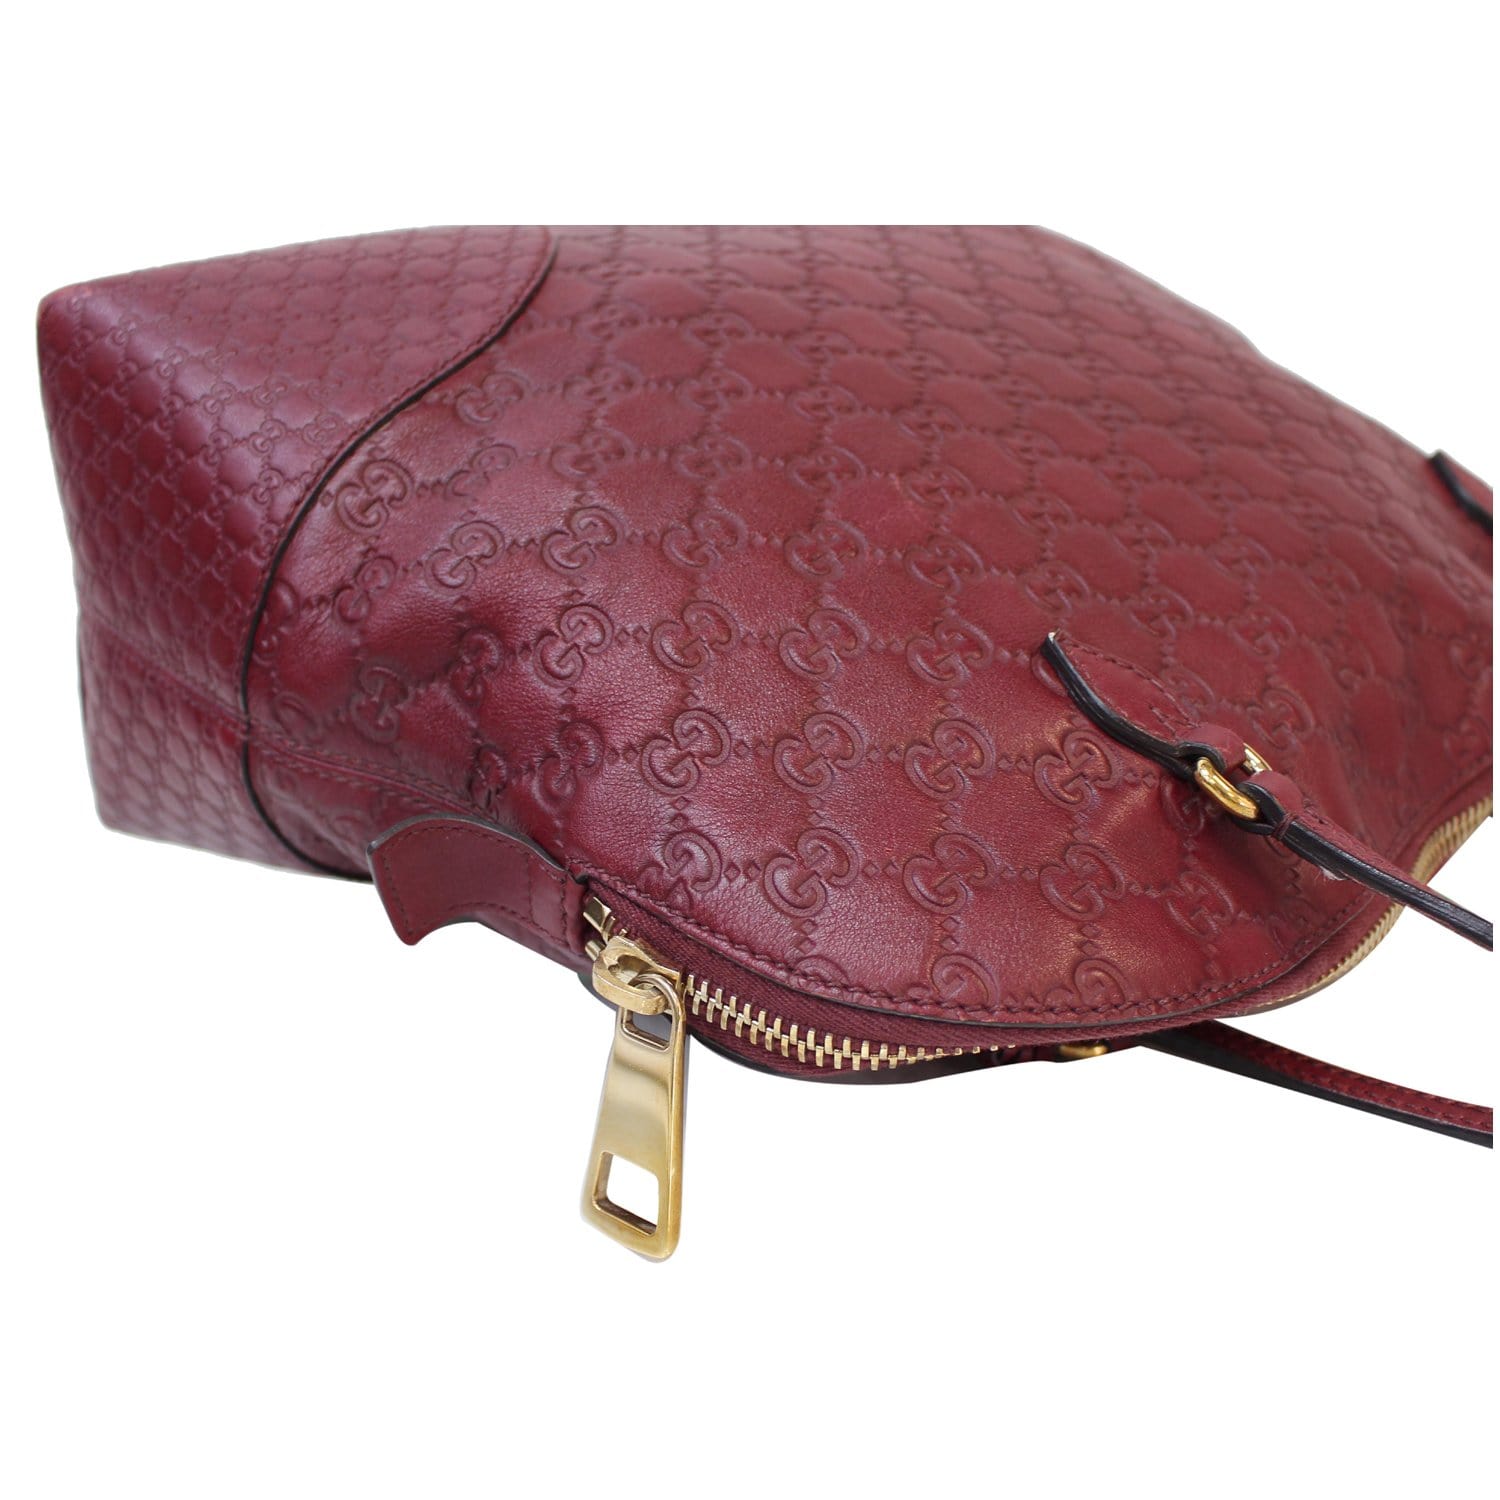 Glamour' Leather Shoulder Handbag: 63788